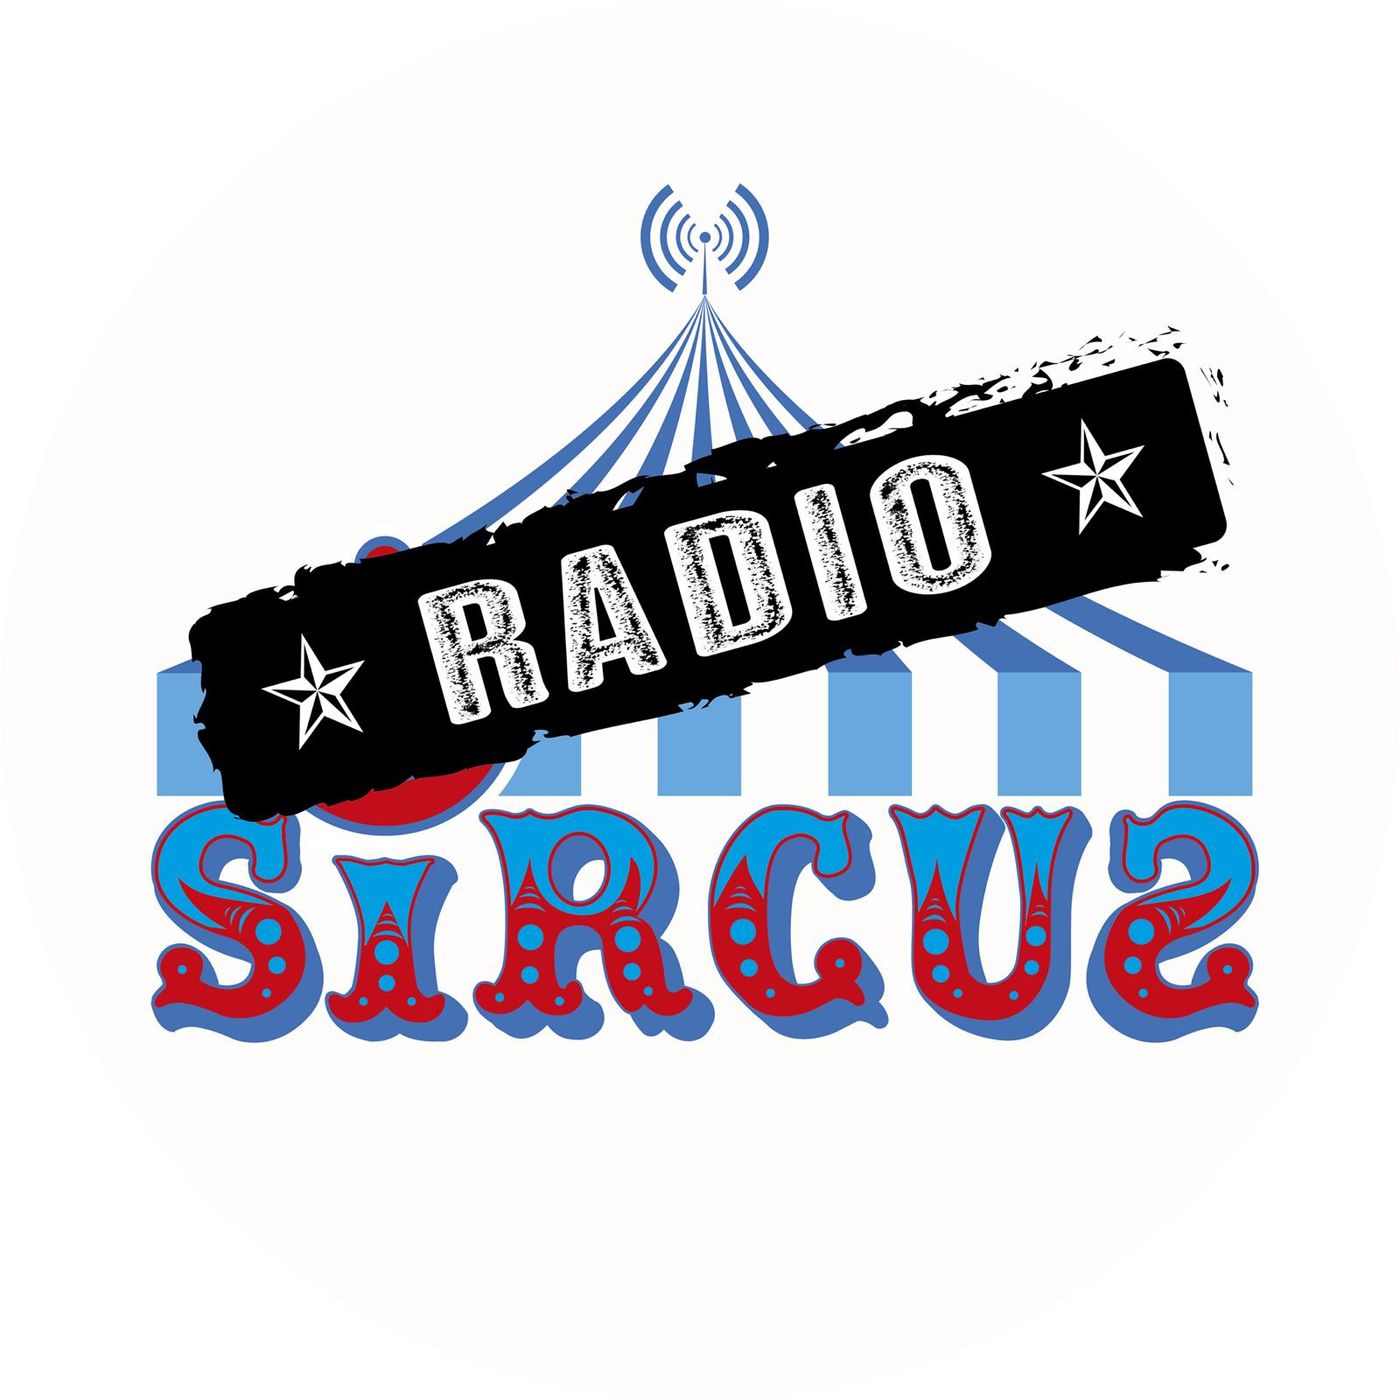 Radio Sircus